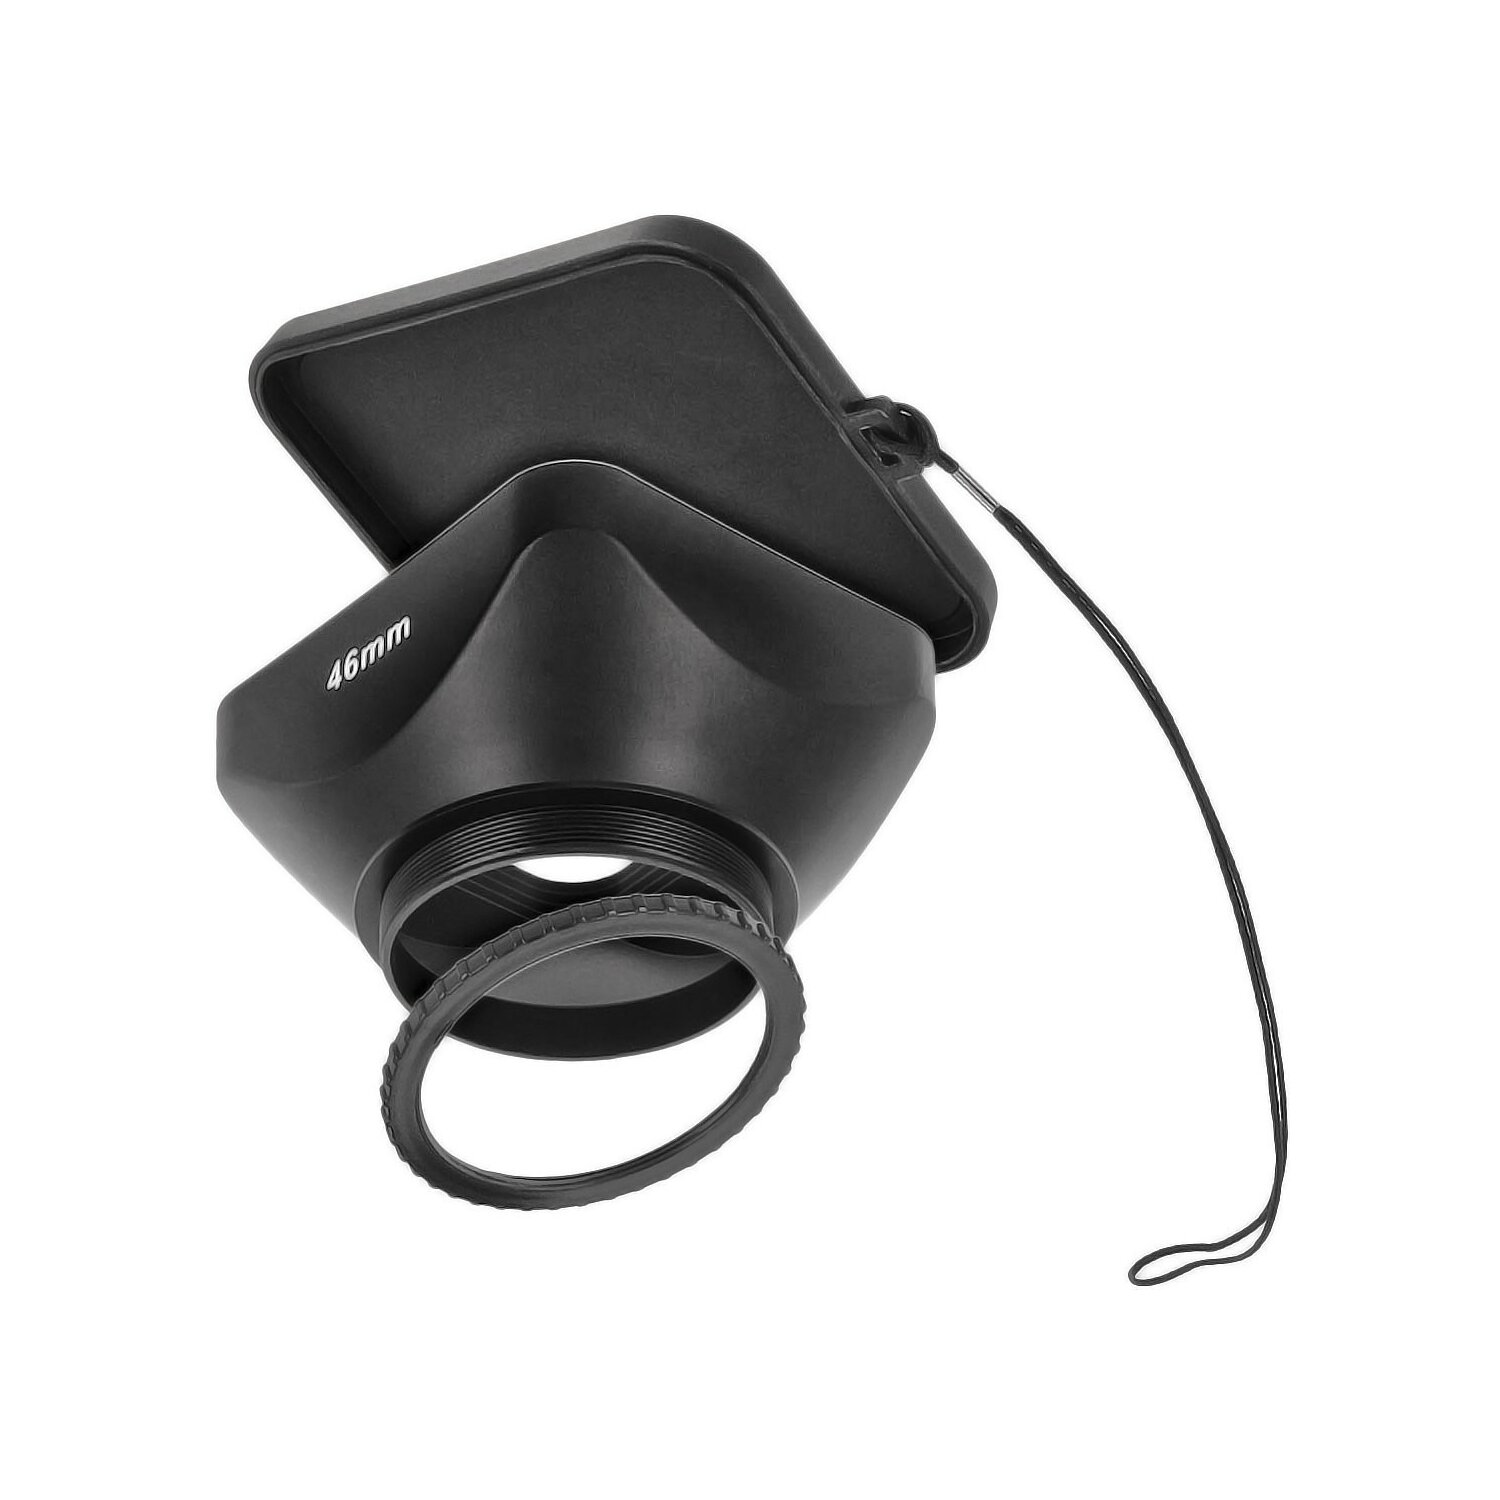 Hochwertige Video Gegenlichtblende Streulichtblende Compendium Matte Box fuer Videokamera mit 46 mm Filtergewinde